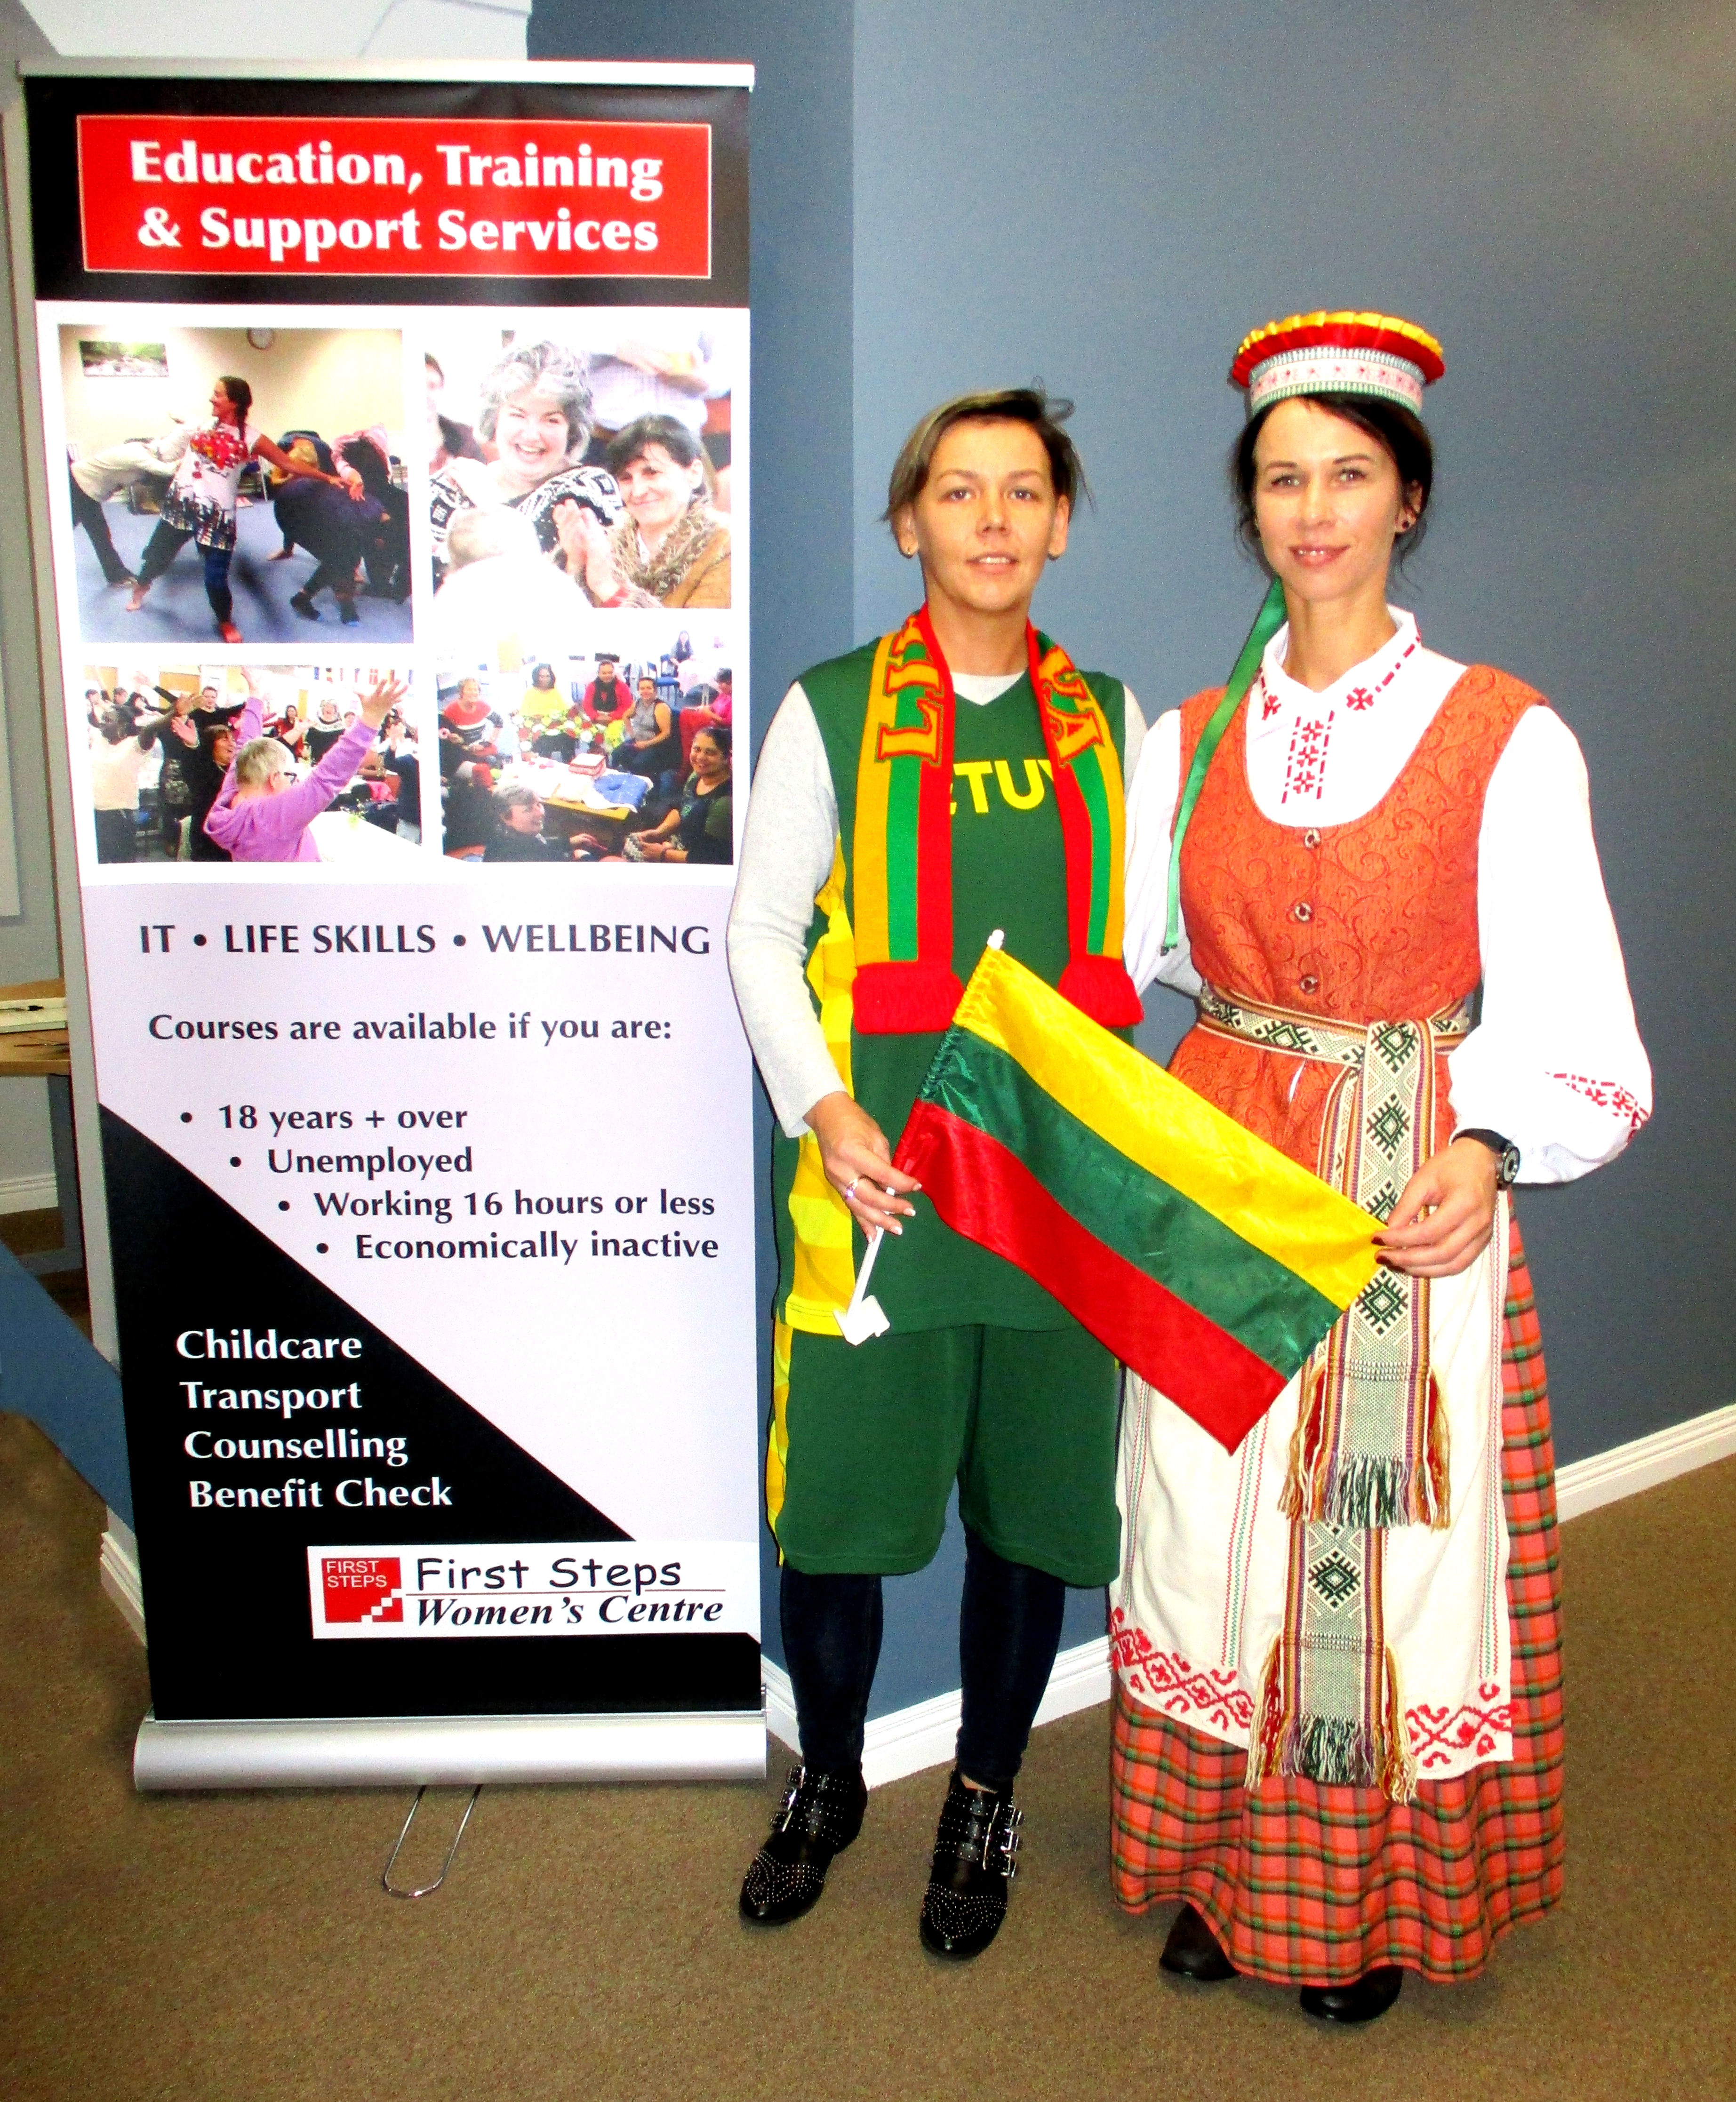 Lithuanian culture